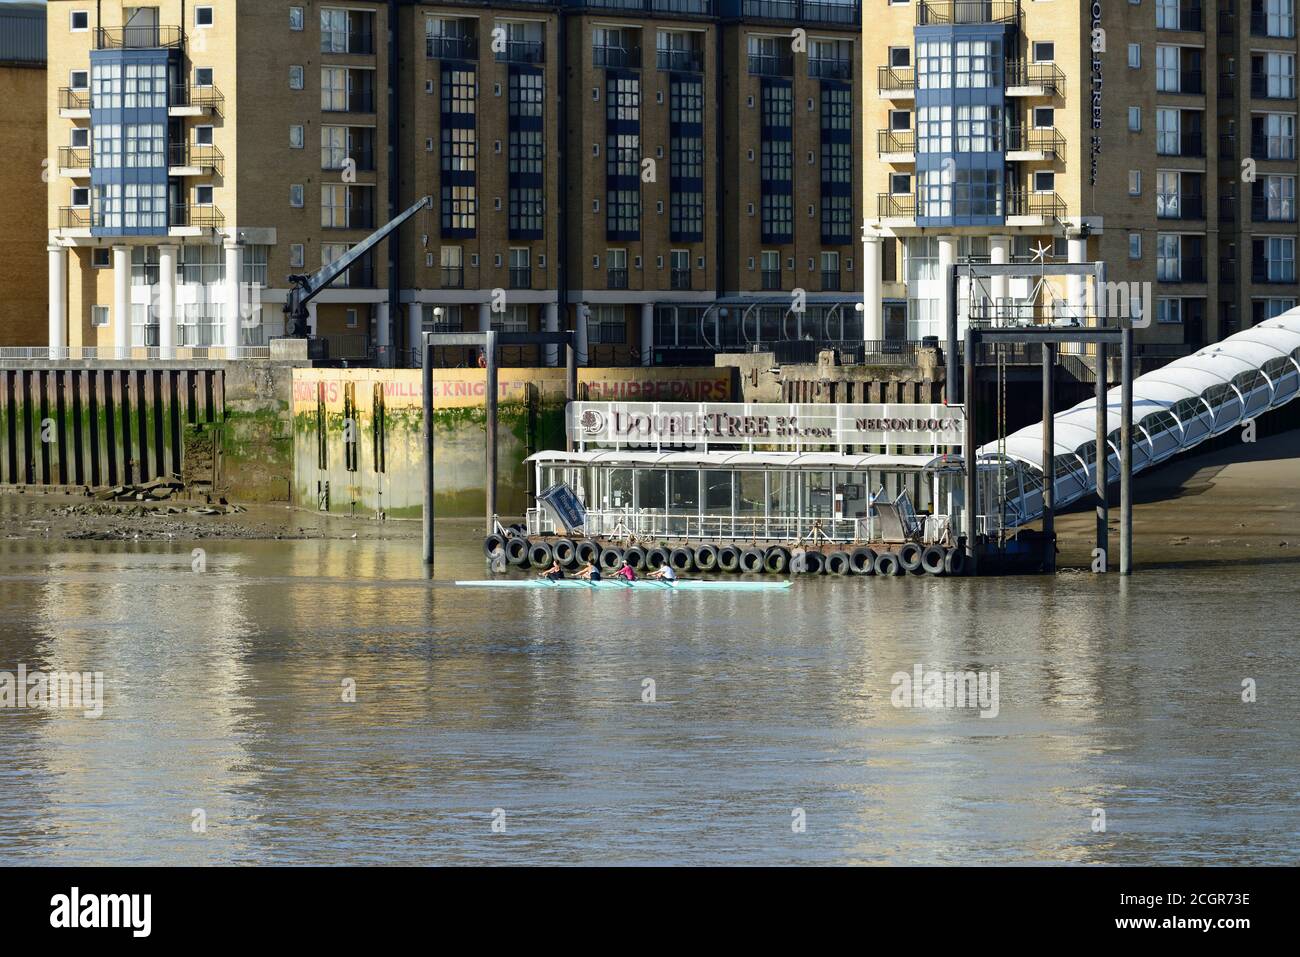 Coxless four aviron passé Nelson Dock Pier et le Doubletree Hilton on the Thames à marée basse, Canary Wharf, East London, Royaume-Uni Banque D'Images